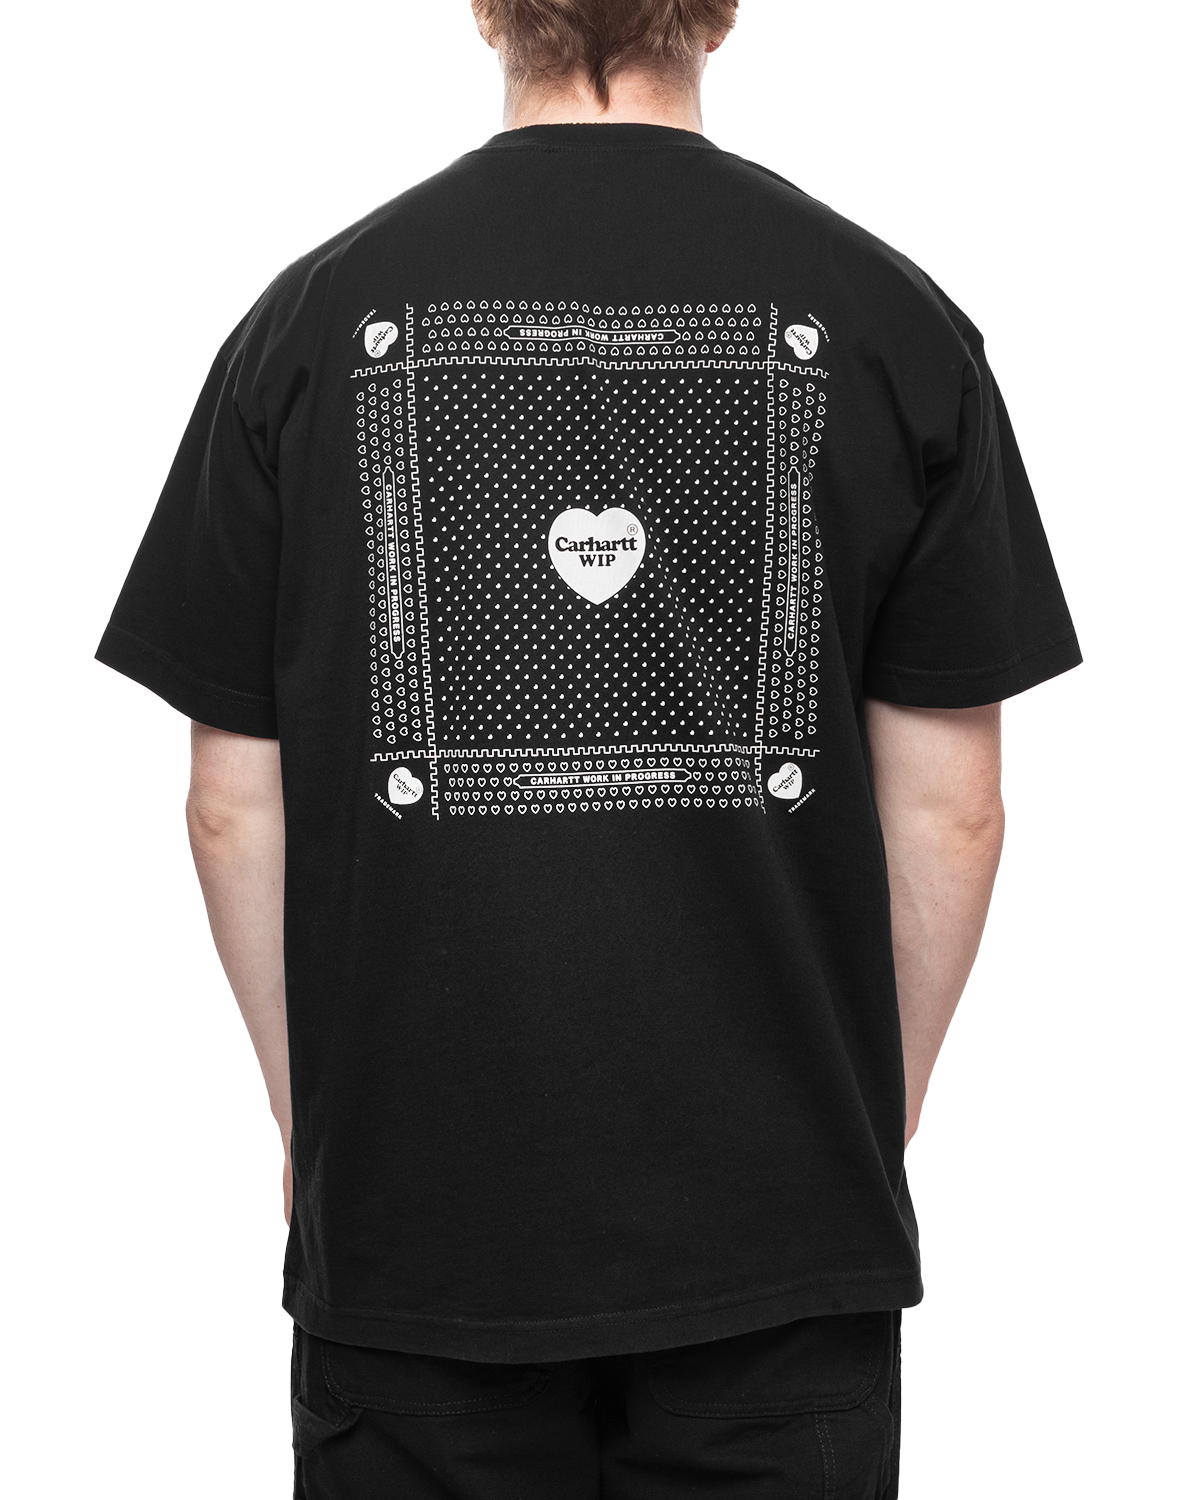 S/S Heart Bandana T-Shirt Black/White (Stone Washed)